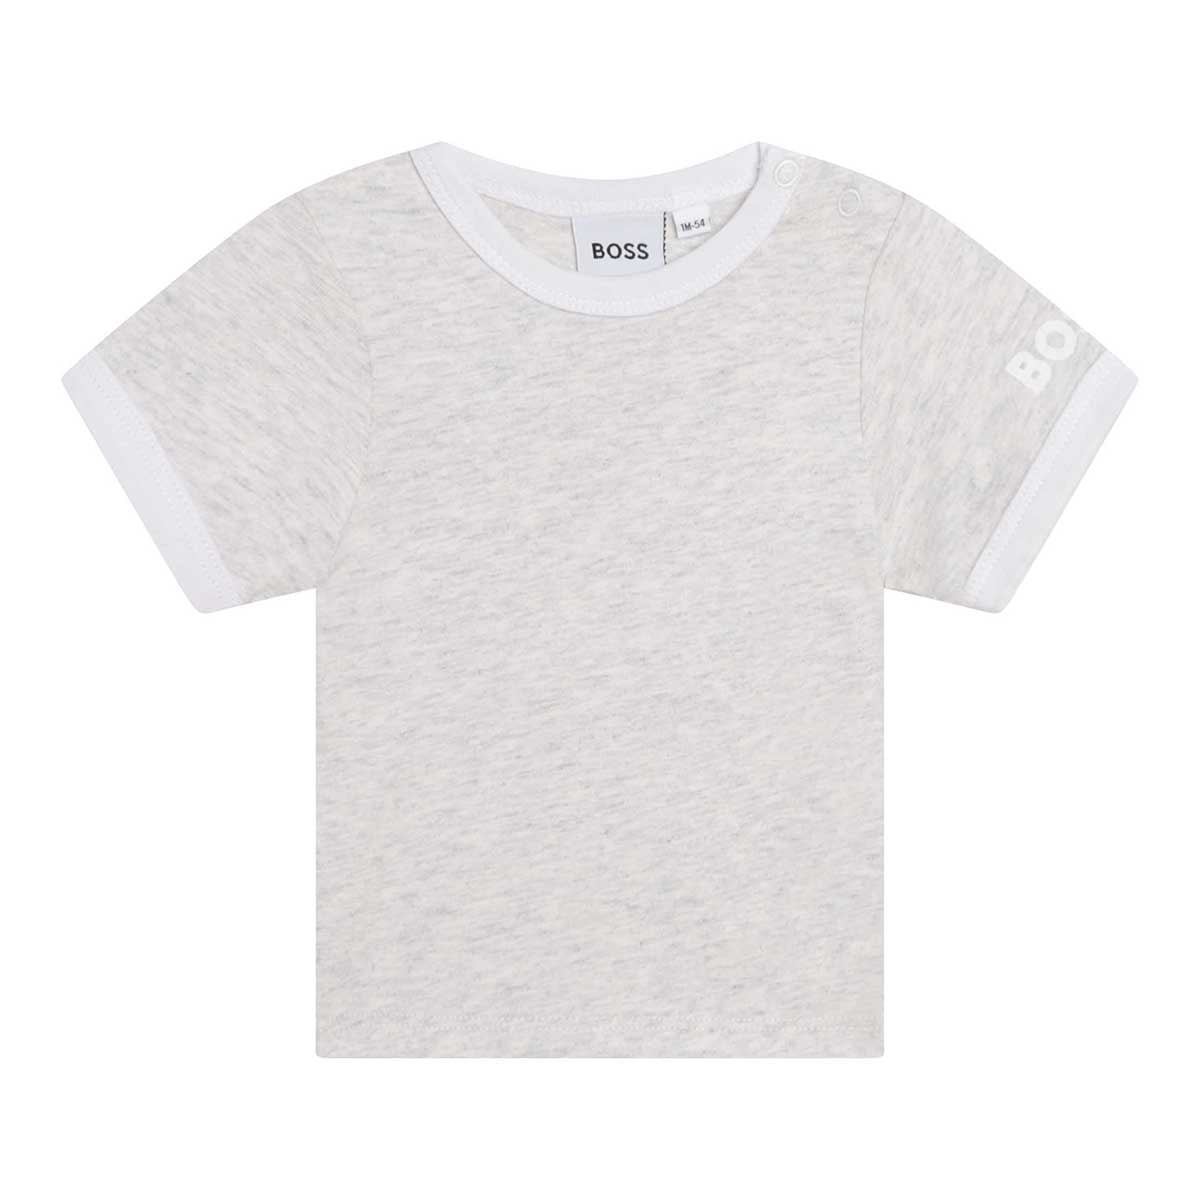 אוברול+ חולצת טי שרט BOSS פסים בכתפיות לתינוקות